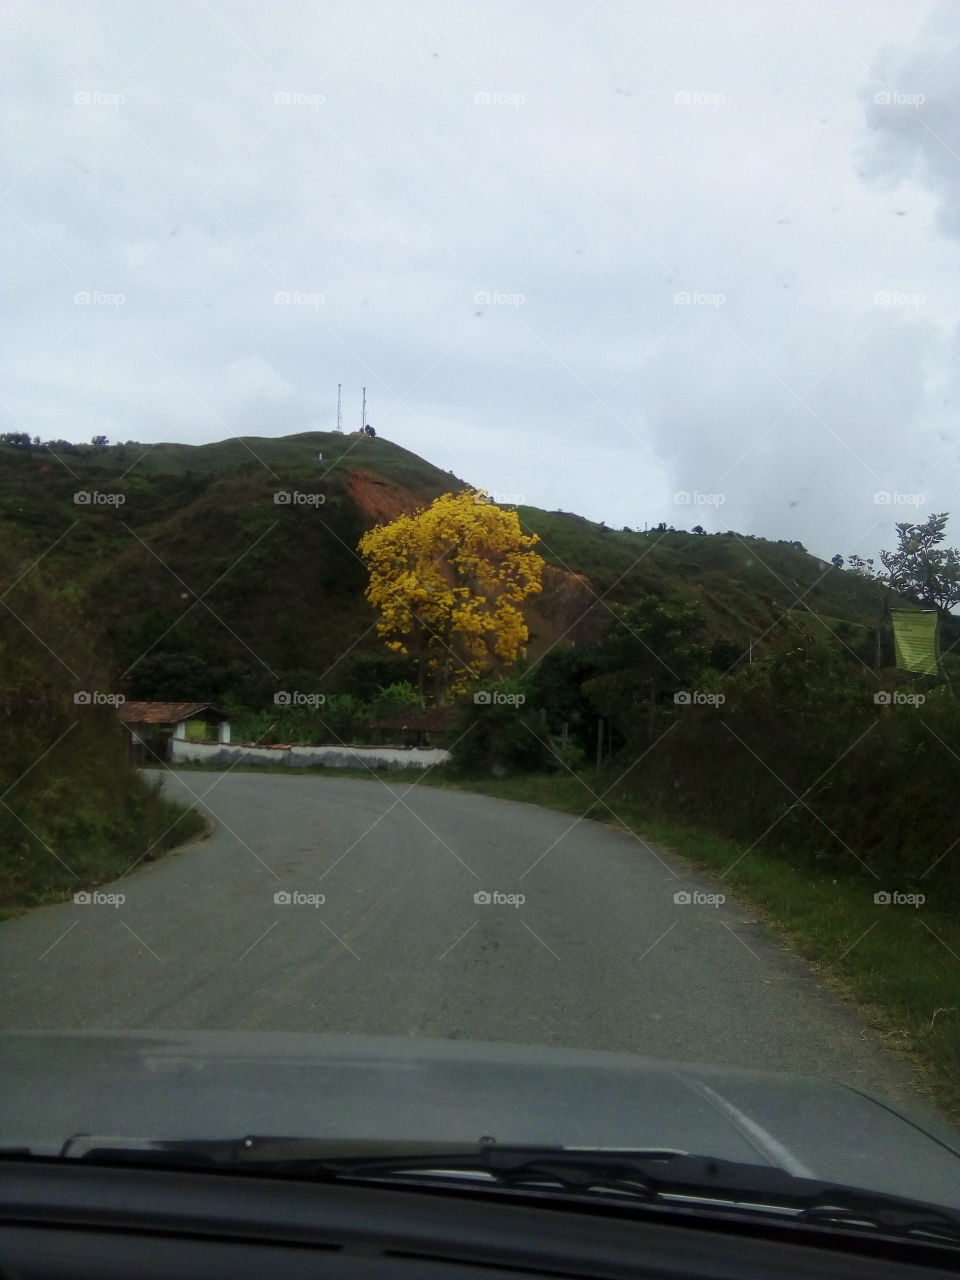 arbol amarillo al lado del camino wntre montañas